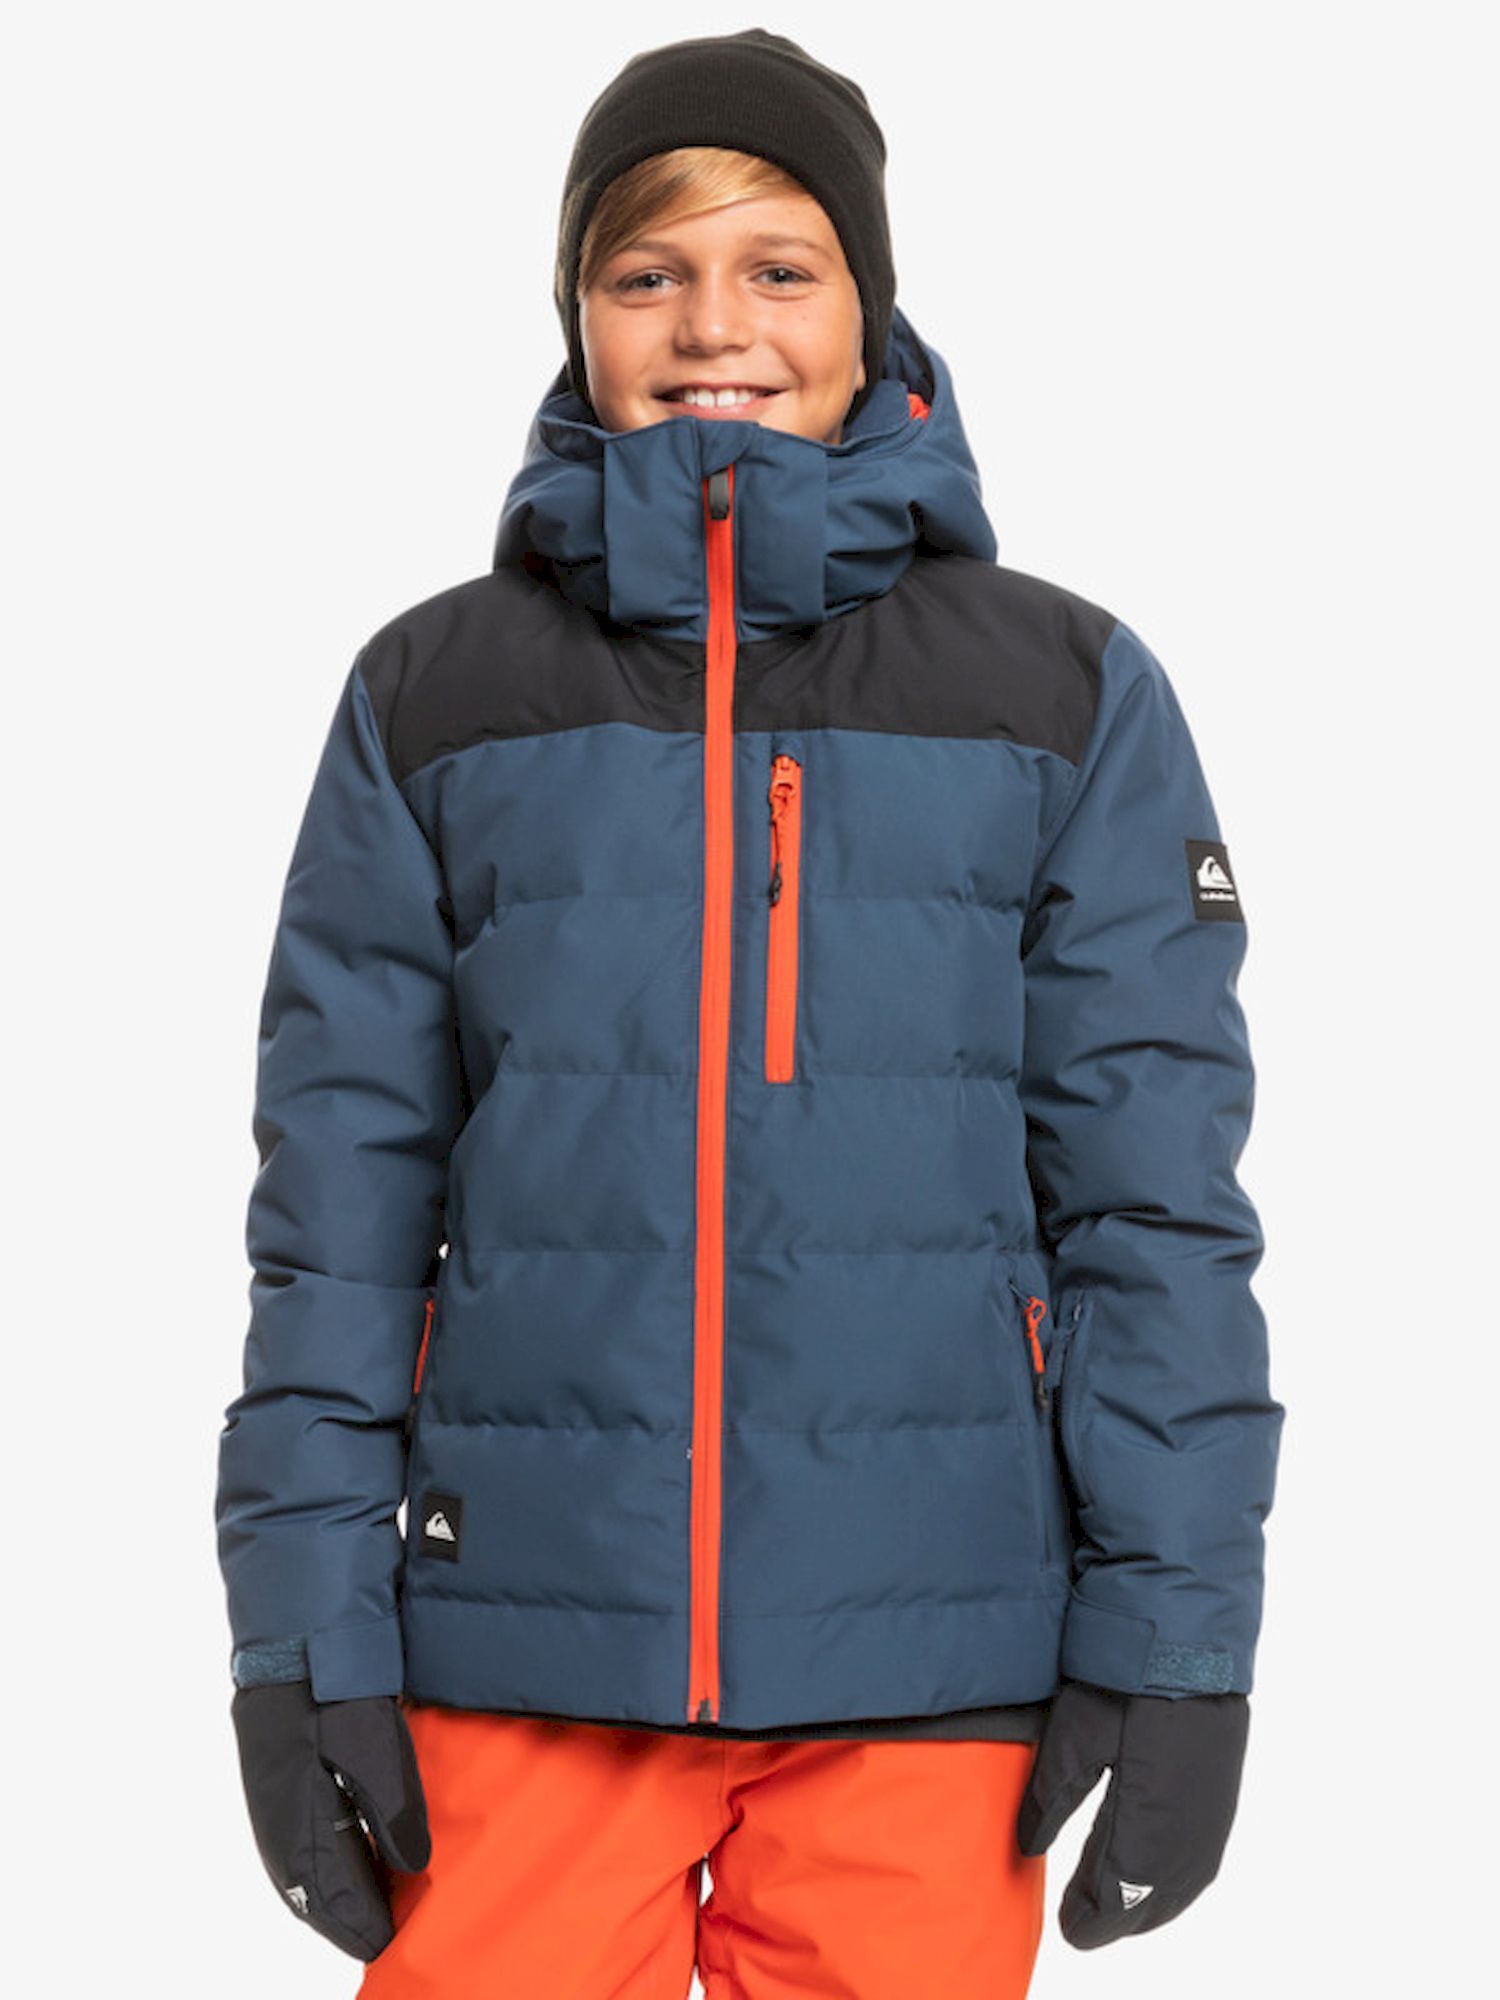 Reizen Sleutel Ben depressief Quiksilver The Edge Youth Jacket - Ski-jas - Kinderen | Hardloop